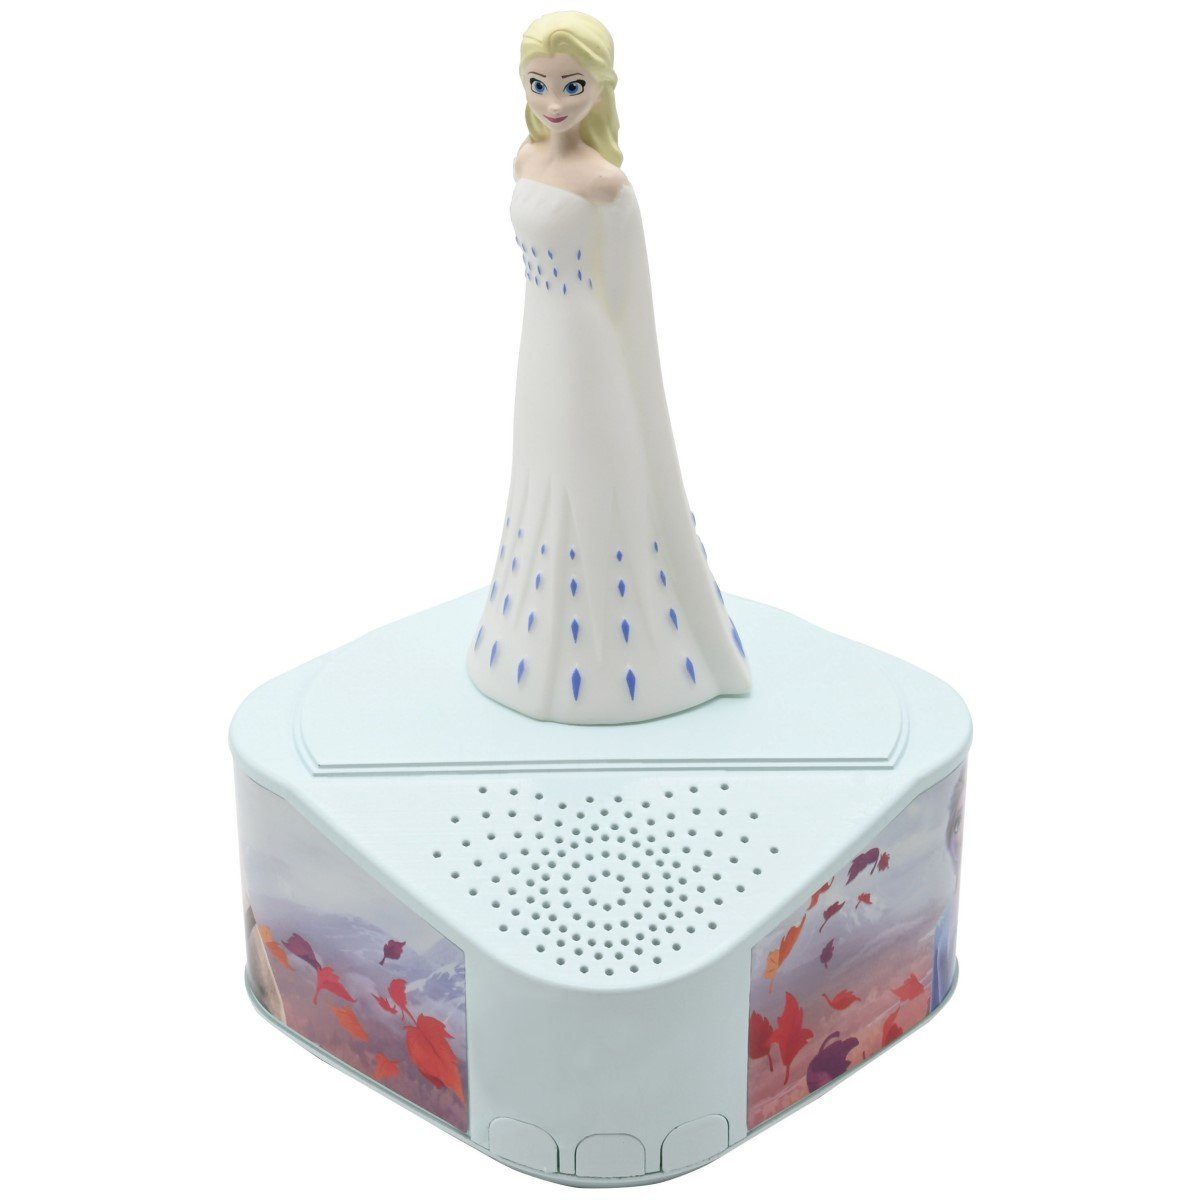 Lexibook® Frozen Elsa Bluetooth-Lautsprecher mit beleuchteter 3D Figur Elsa Anna CD-Player